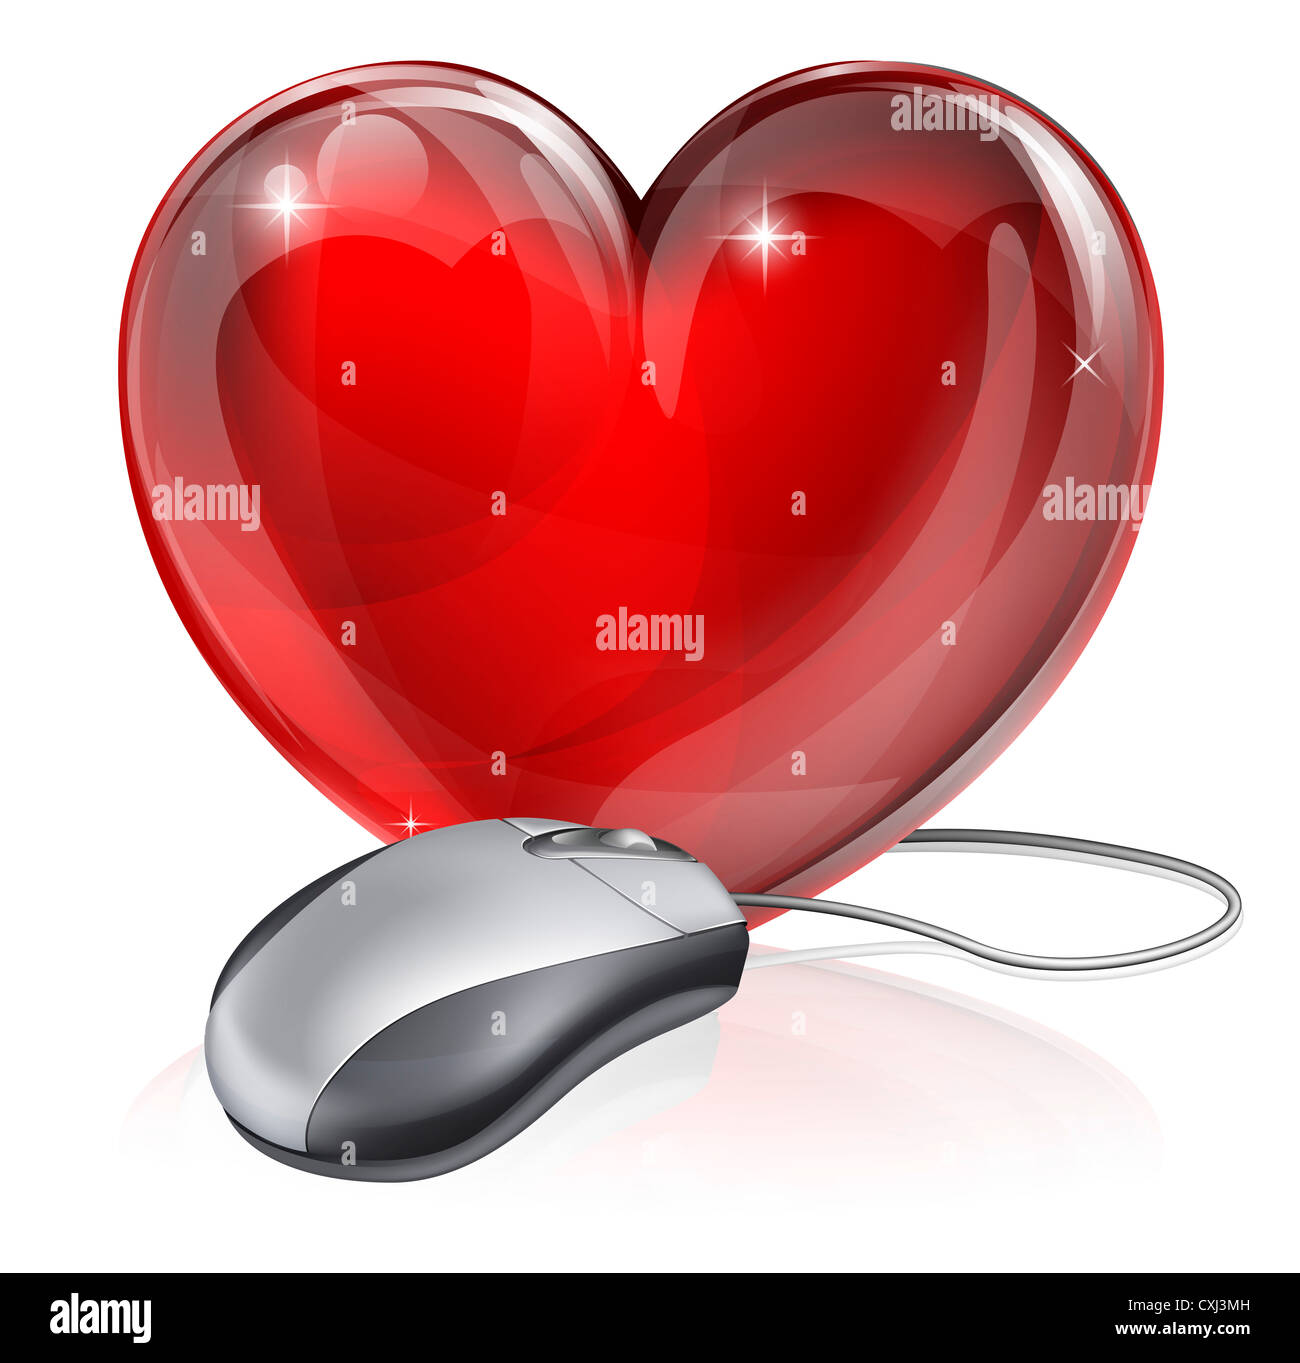 Illustrazione di un mouse per computer collegato ad un cuore rosso simbolo, il concetto di online dating, romanticismo o simile Foto Stock